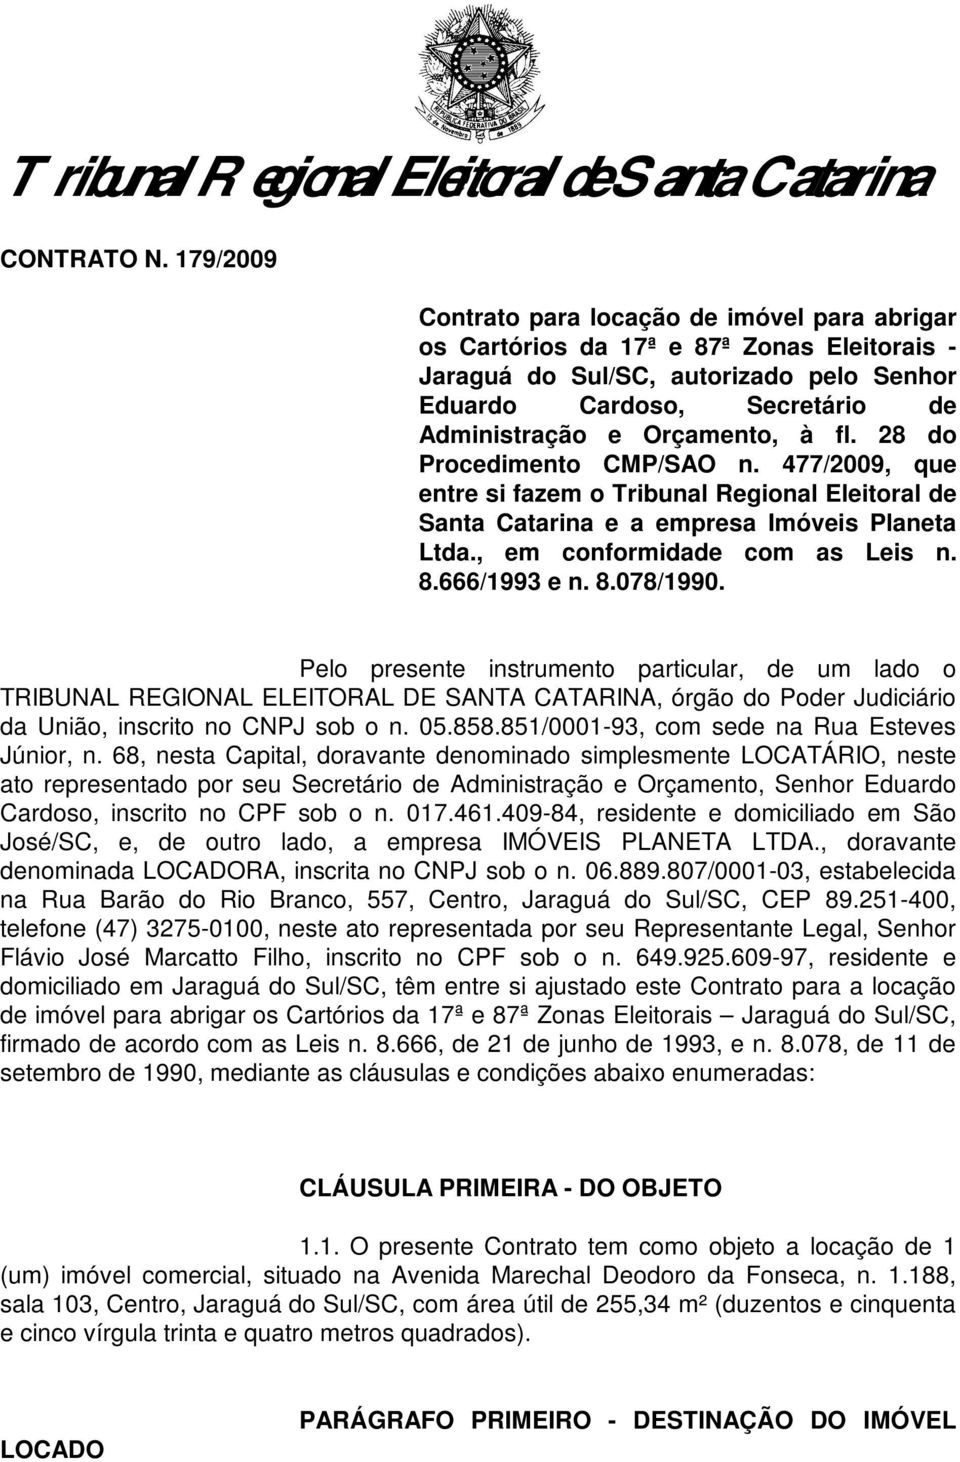 à fl. 28 do Procedimento CMP/SAO n. 477/2009, que entre si fazem o Tribunal Regional Eleitoral de Santa Catarina e a empresa Imóveis Planeta Ltda., em conformidade com as Leis n. 8.666/1993 e n. 8.078/1990.